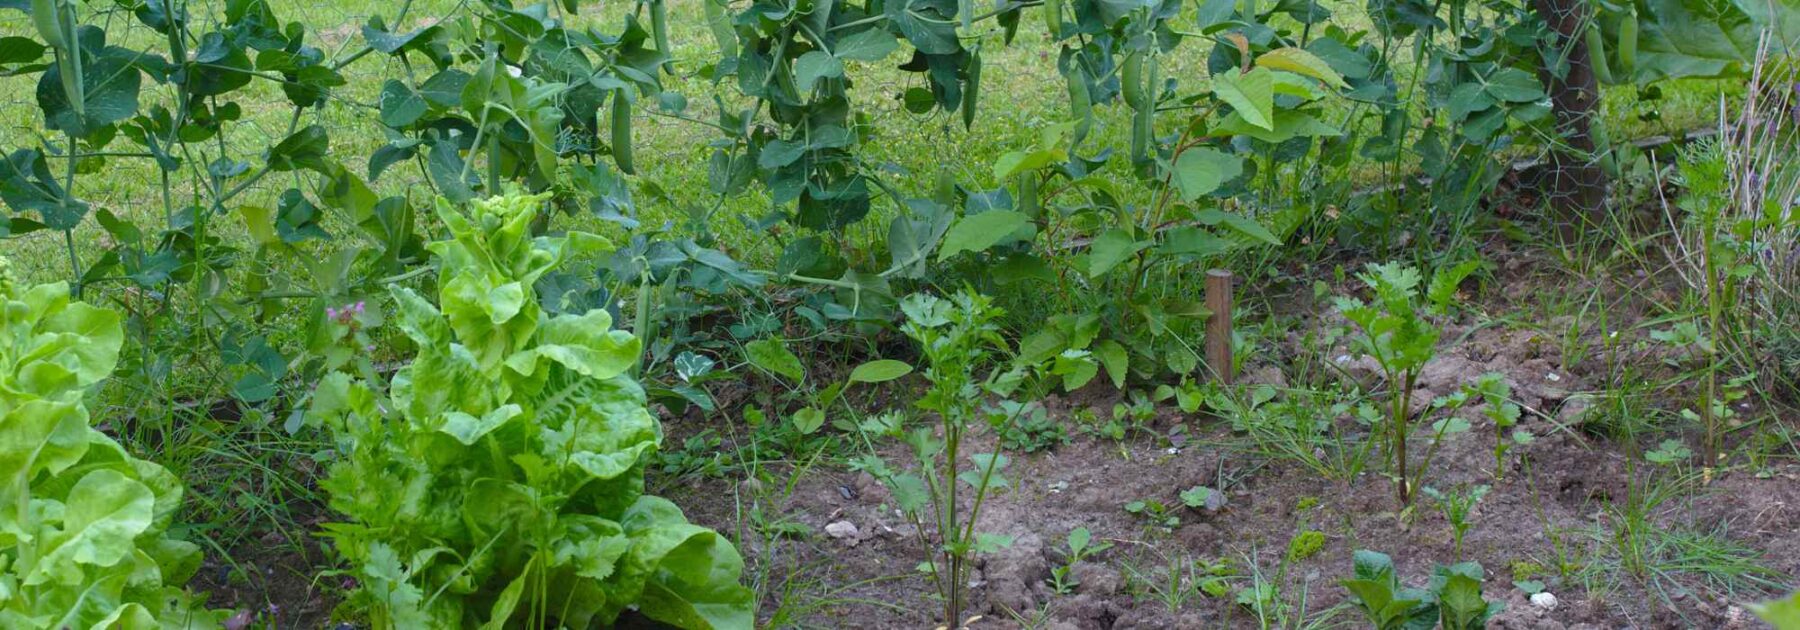 Comment avoir des récoltes abondantes au potager malgré un sol humide ?